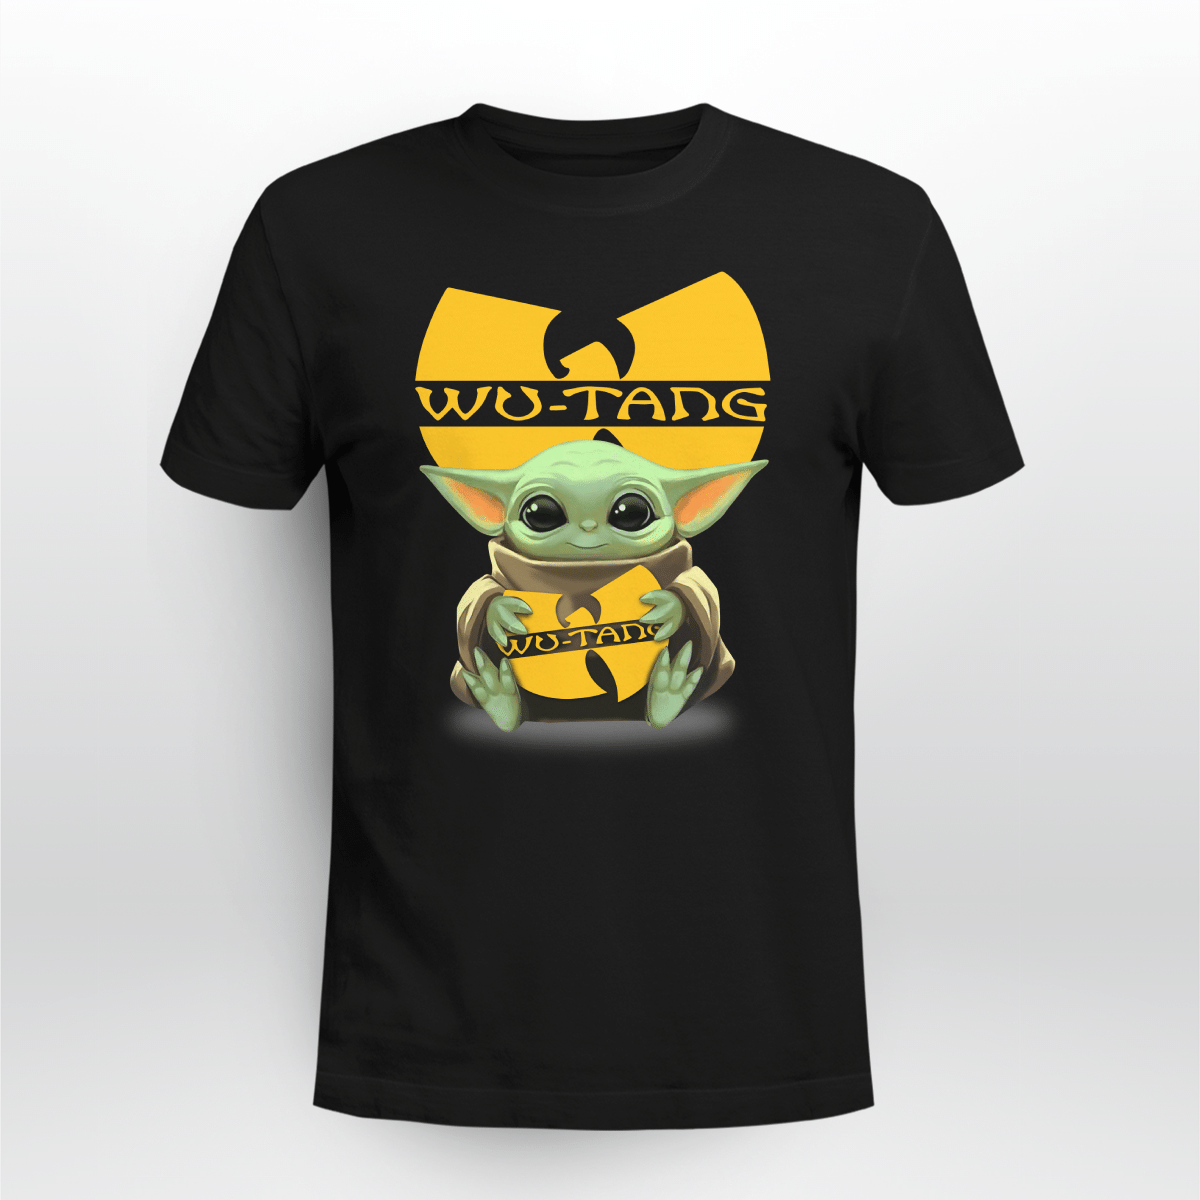 Wu-tang Baby Yoda T-Shirt